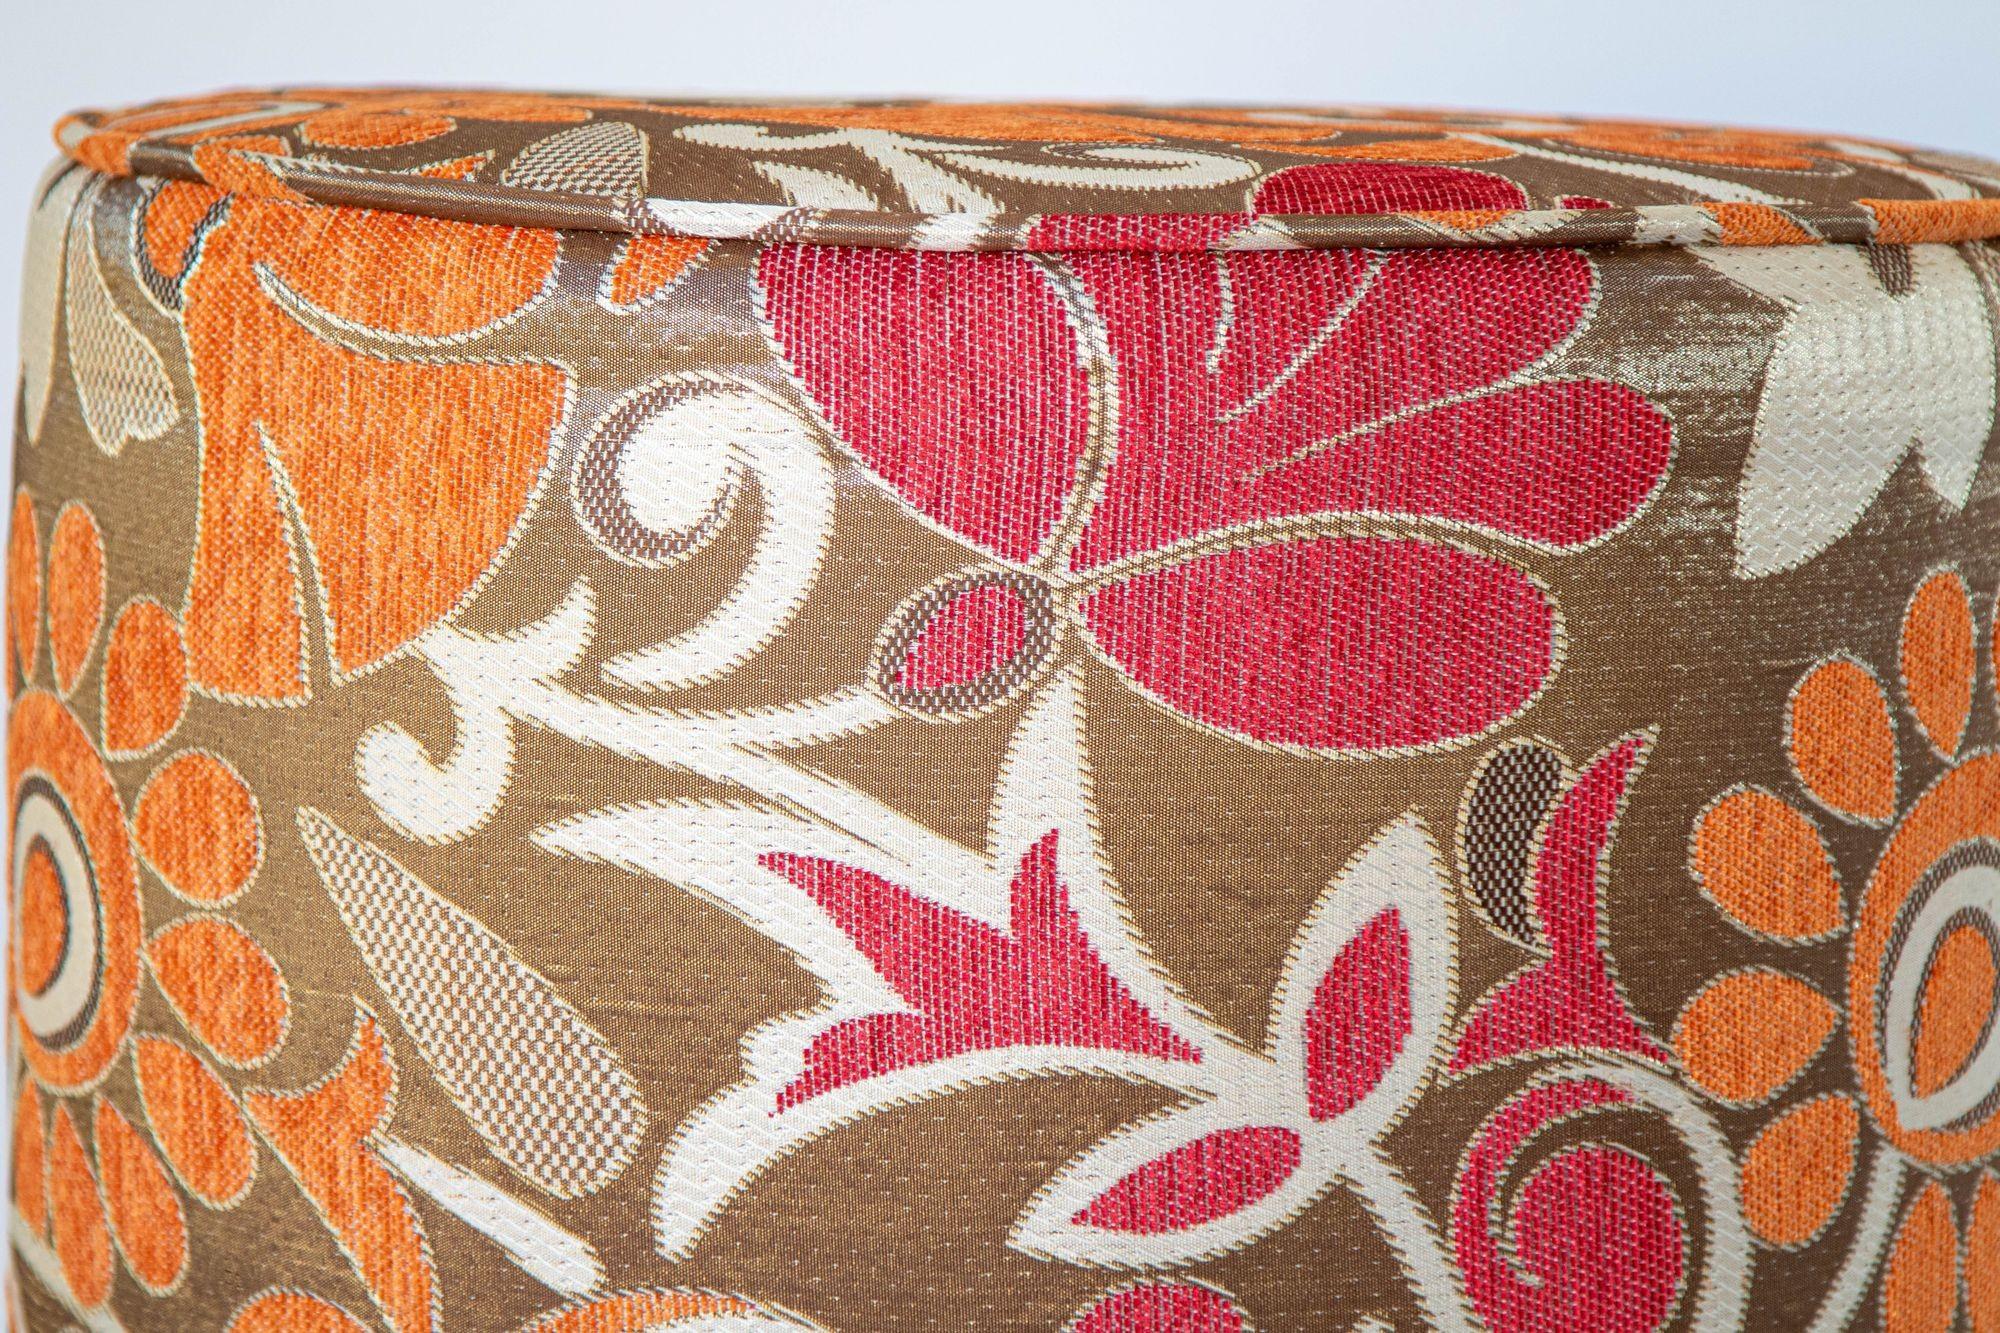 20th Century Vintage Bohemian Poufs in Post Modern Velvet Upholstered Stools 1970s Style For Sale